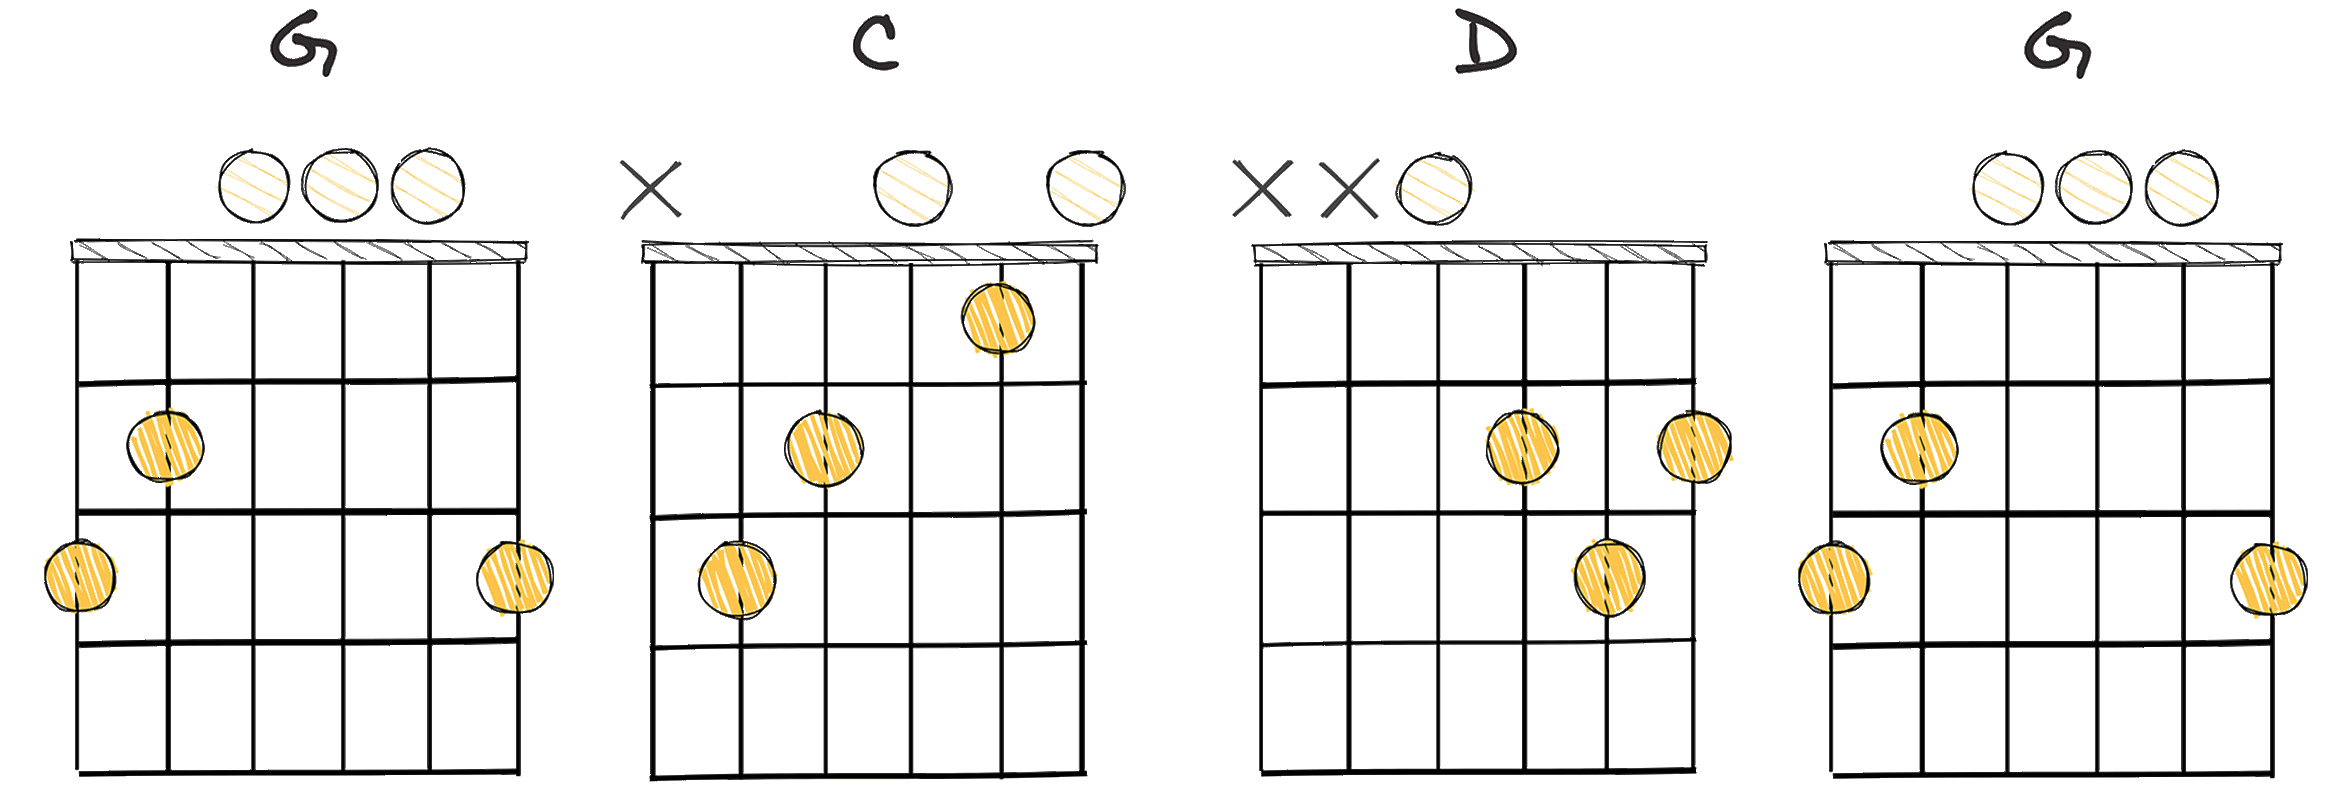 I-IV-V-I (1-4-5-1) chords diagram